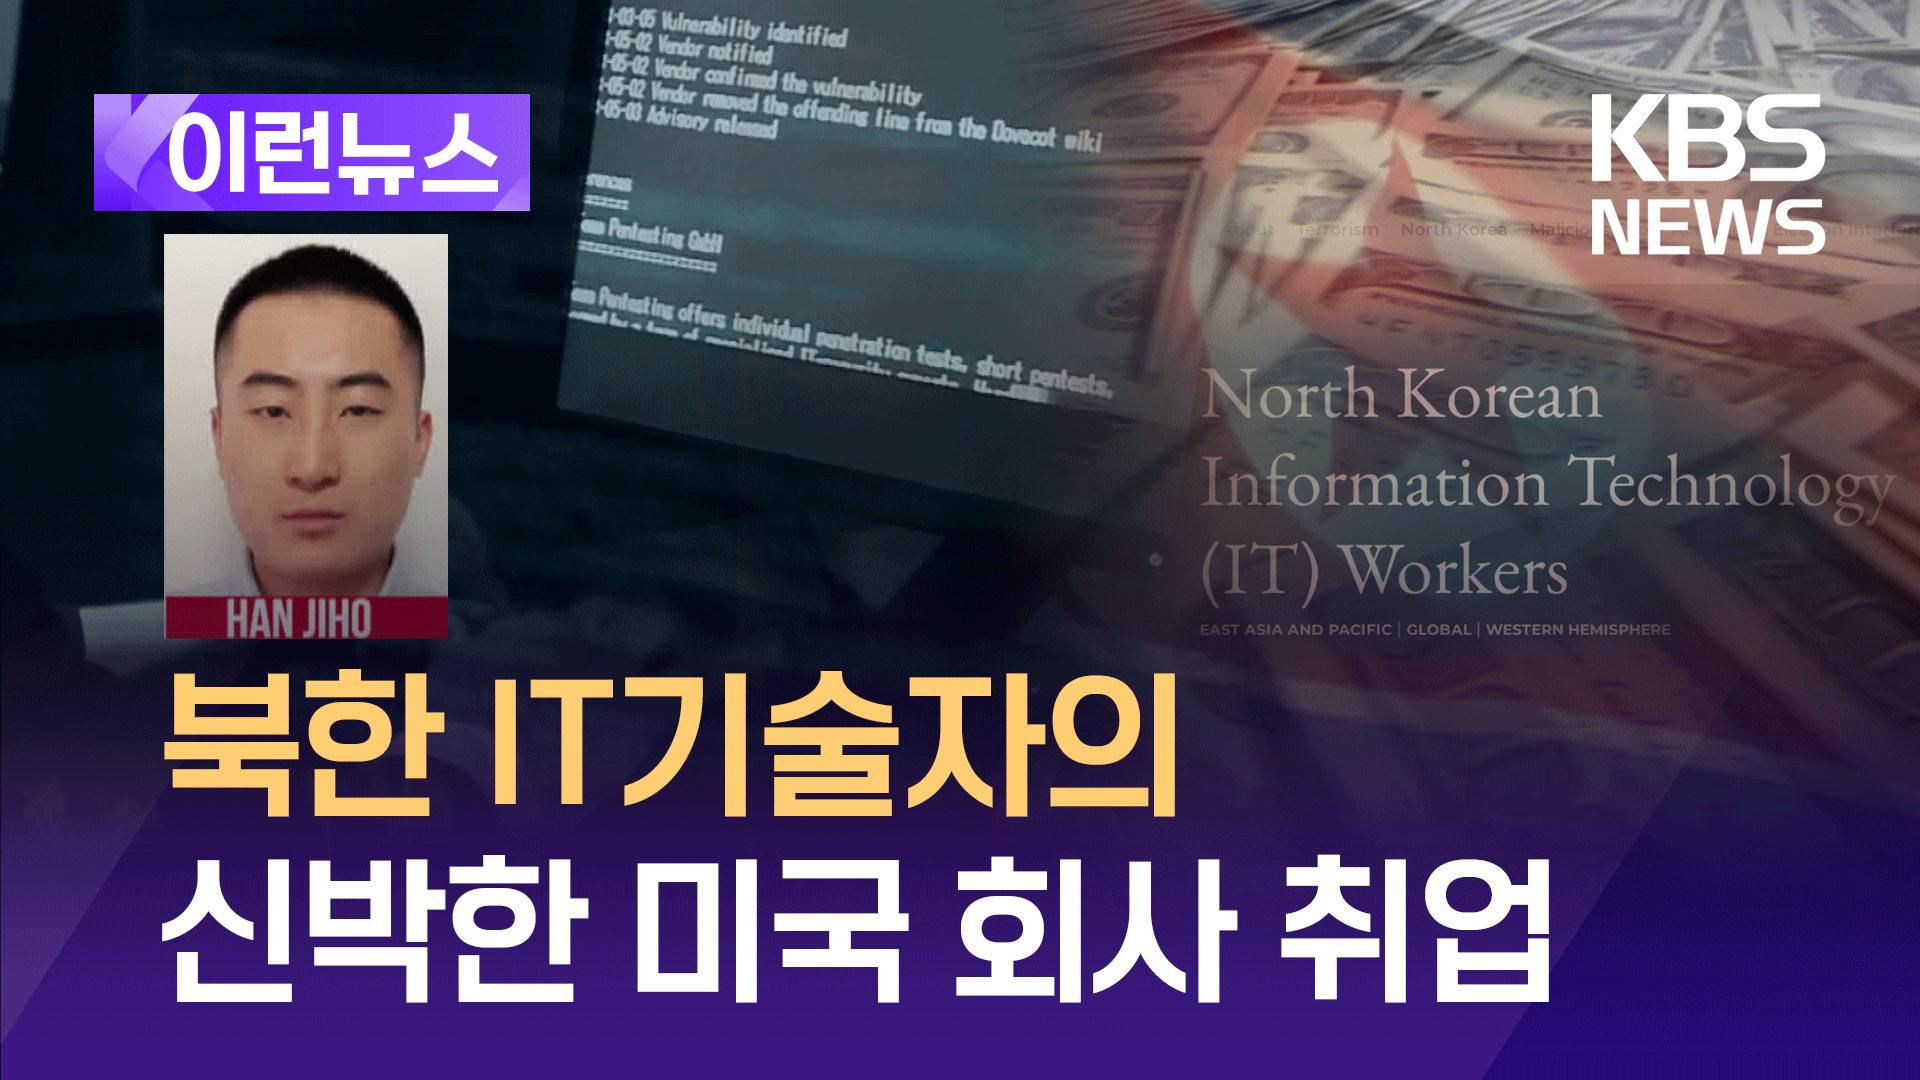 ‘미국 취업’ 북한 IT기술자에 현상금 67억 원 걸려 